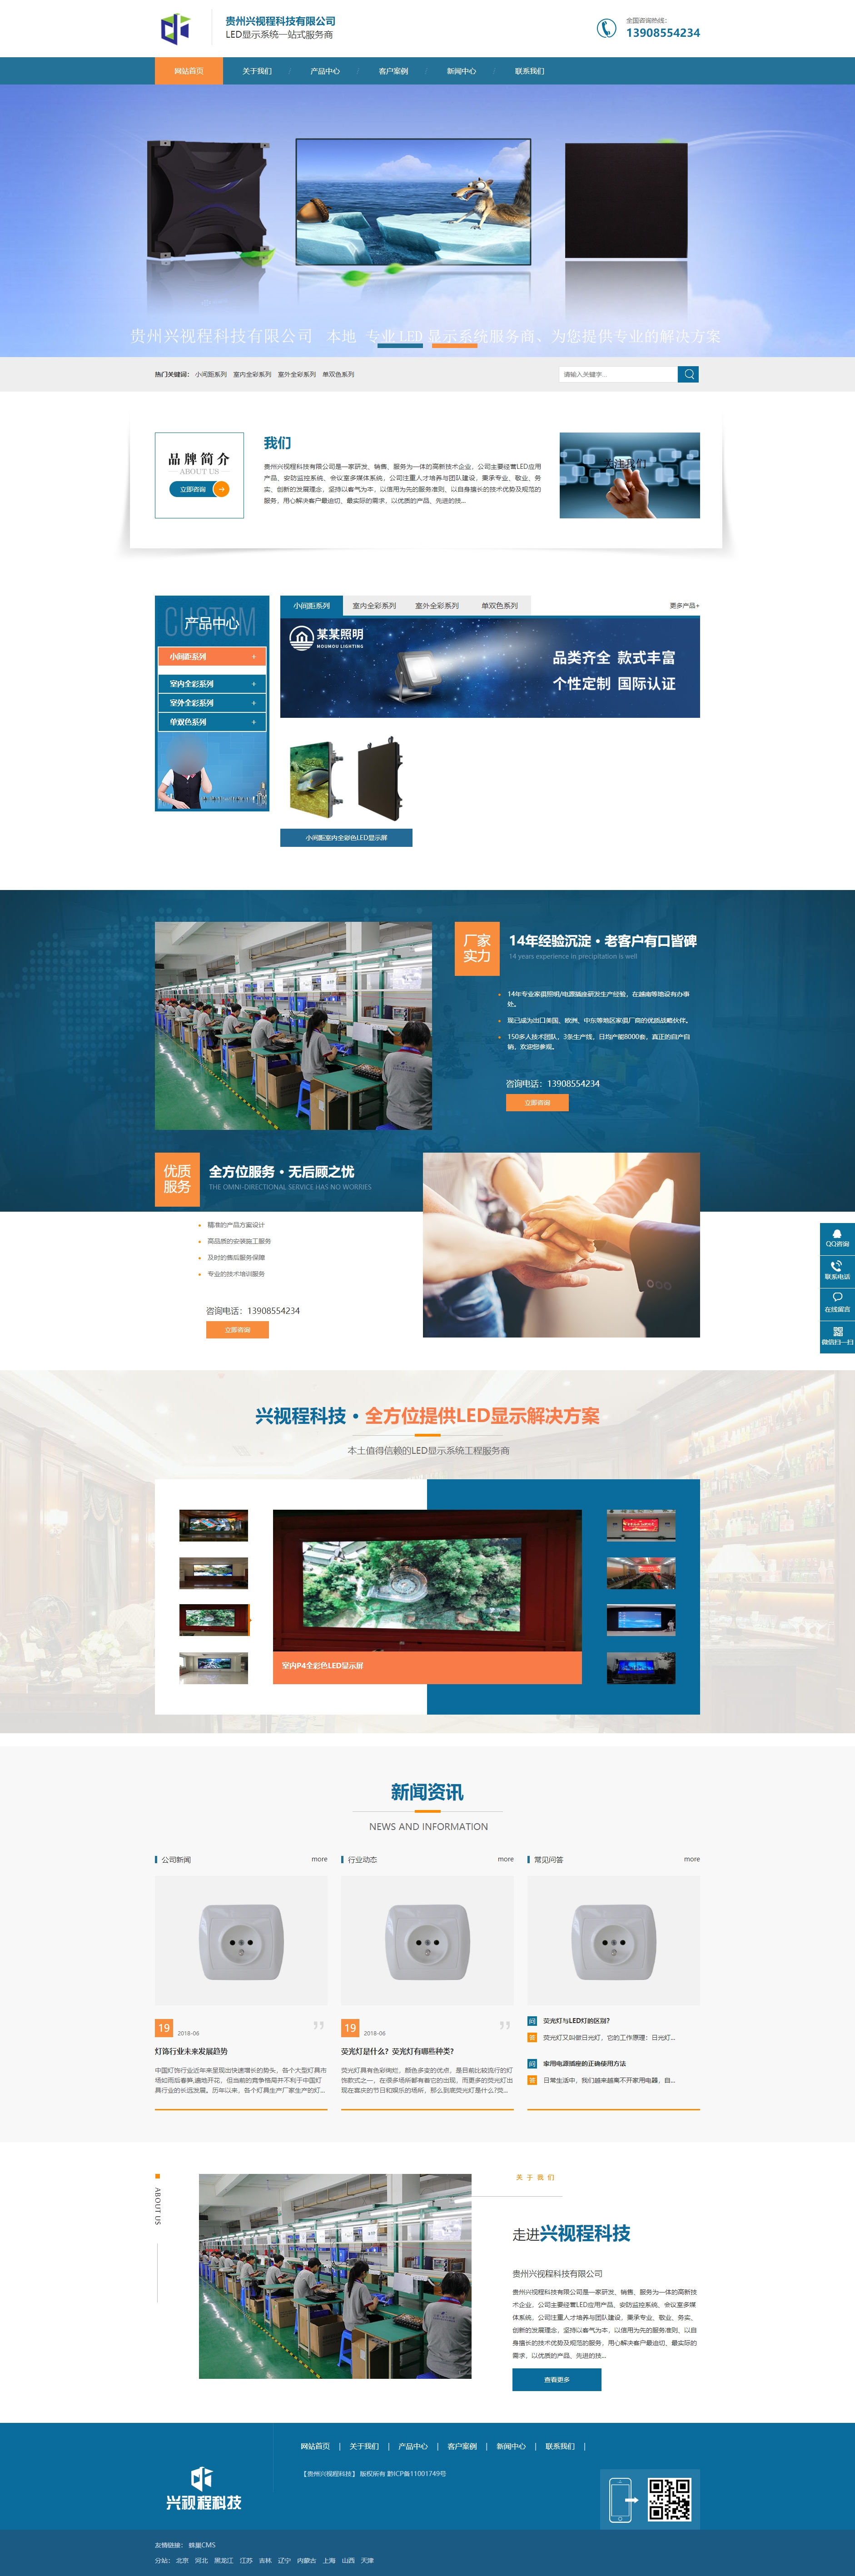 遵义贵州兴视程科技有限公司 网站正式上线